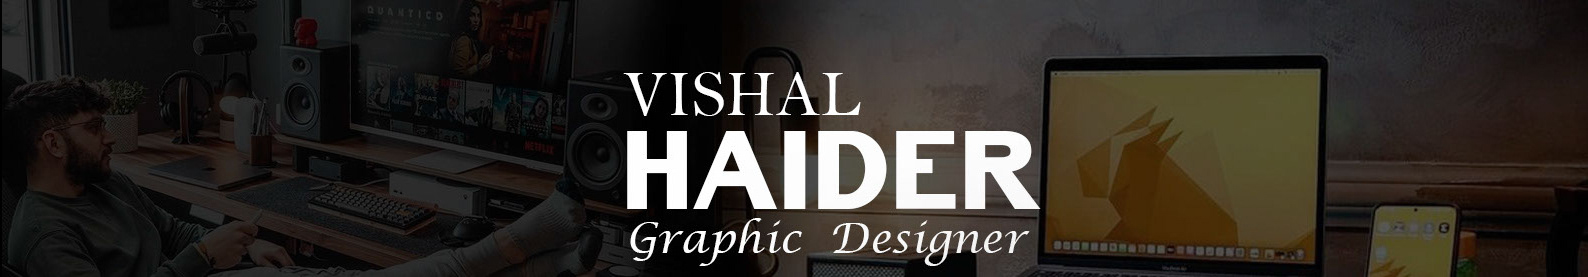 Vishal haider's profile banner